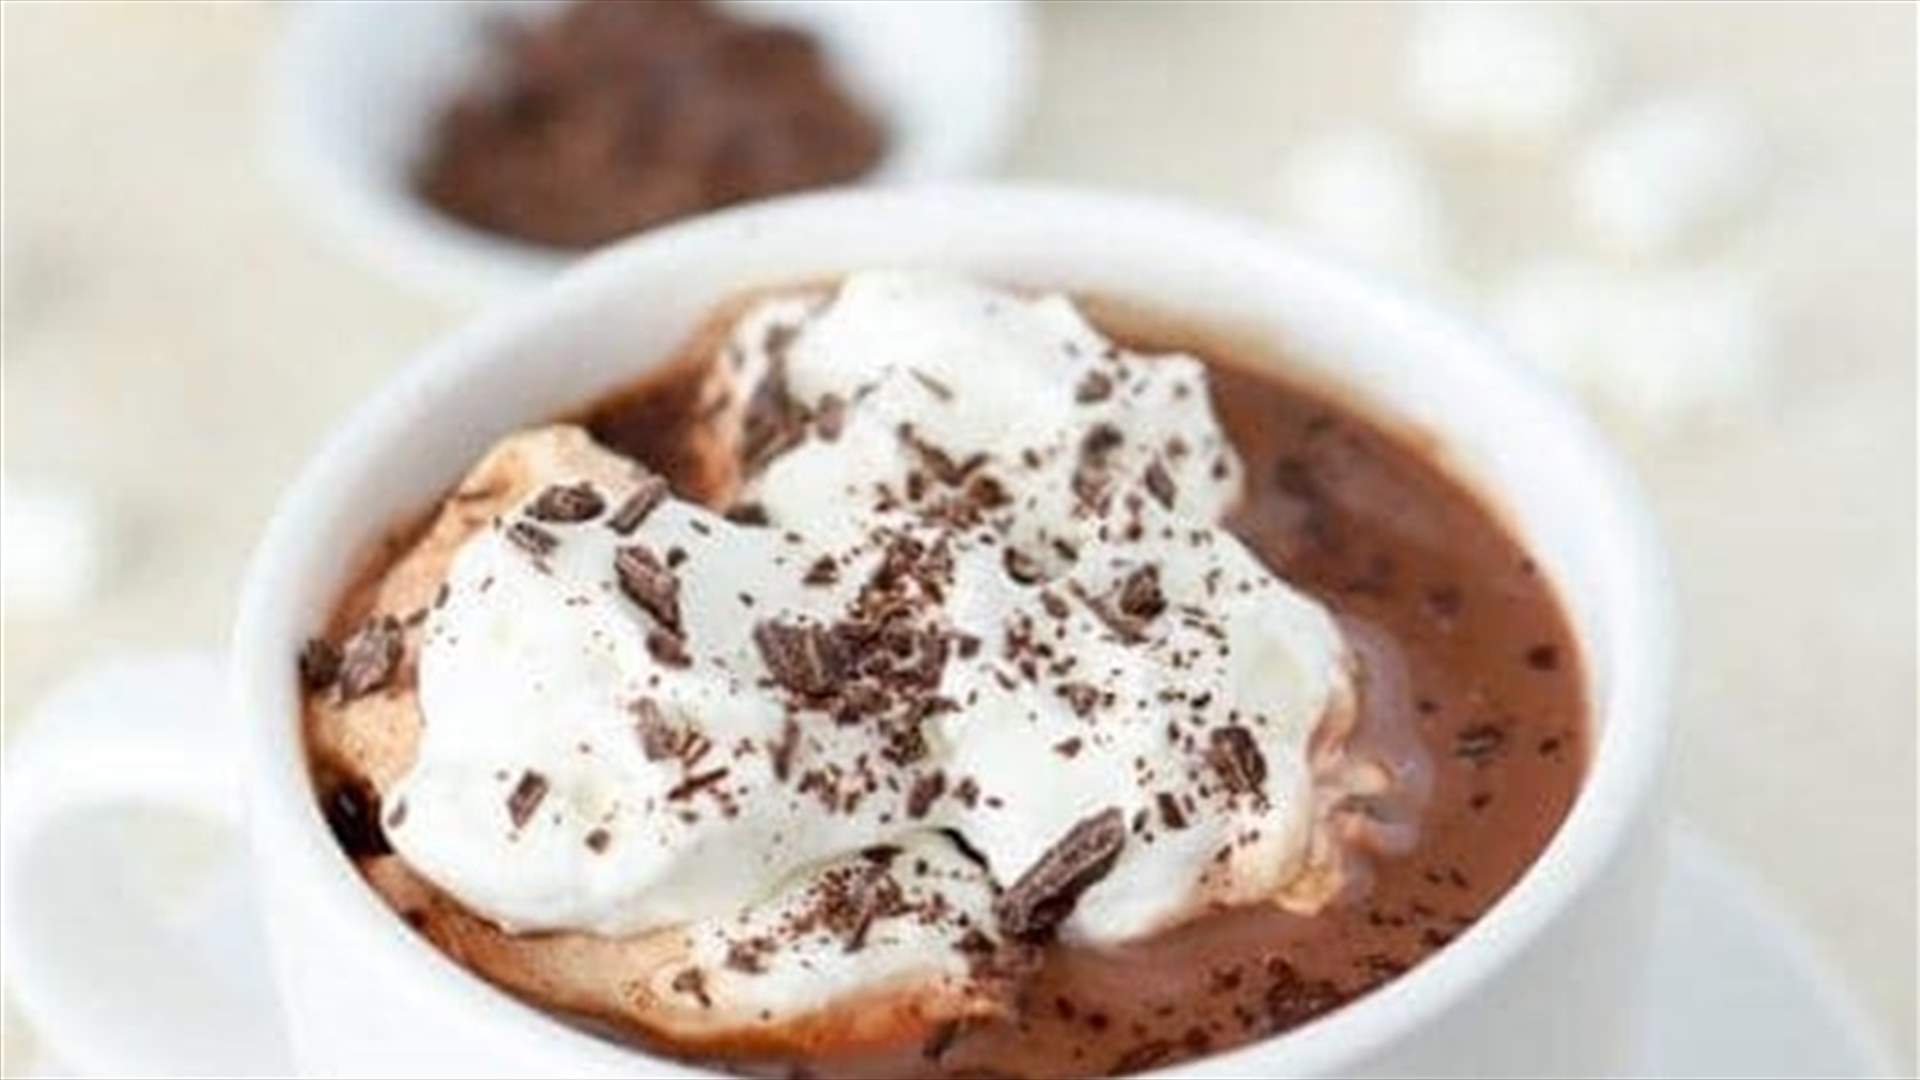 تلذذوا بها في المنزل... إليكم طريقة سهلة لتحضير الشوكولاته الساخنة في الشتاء